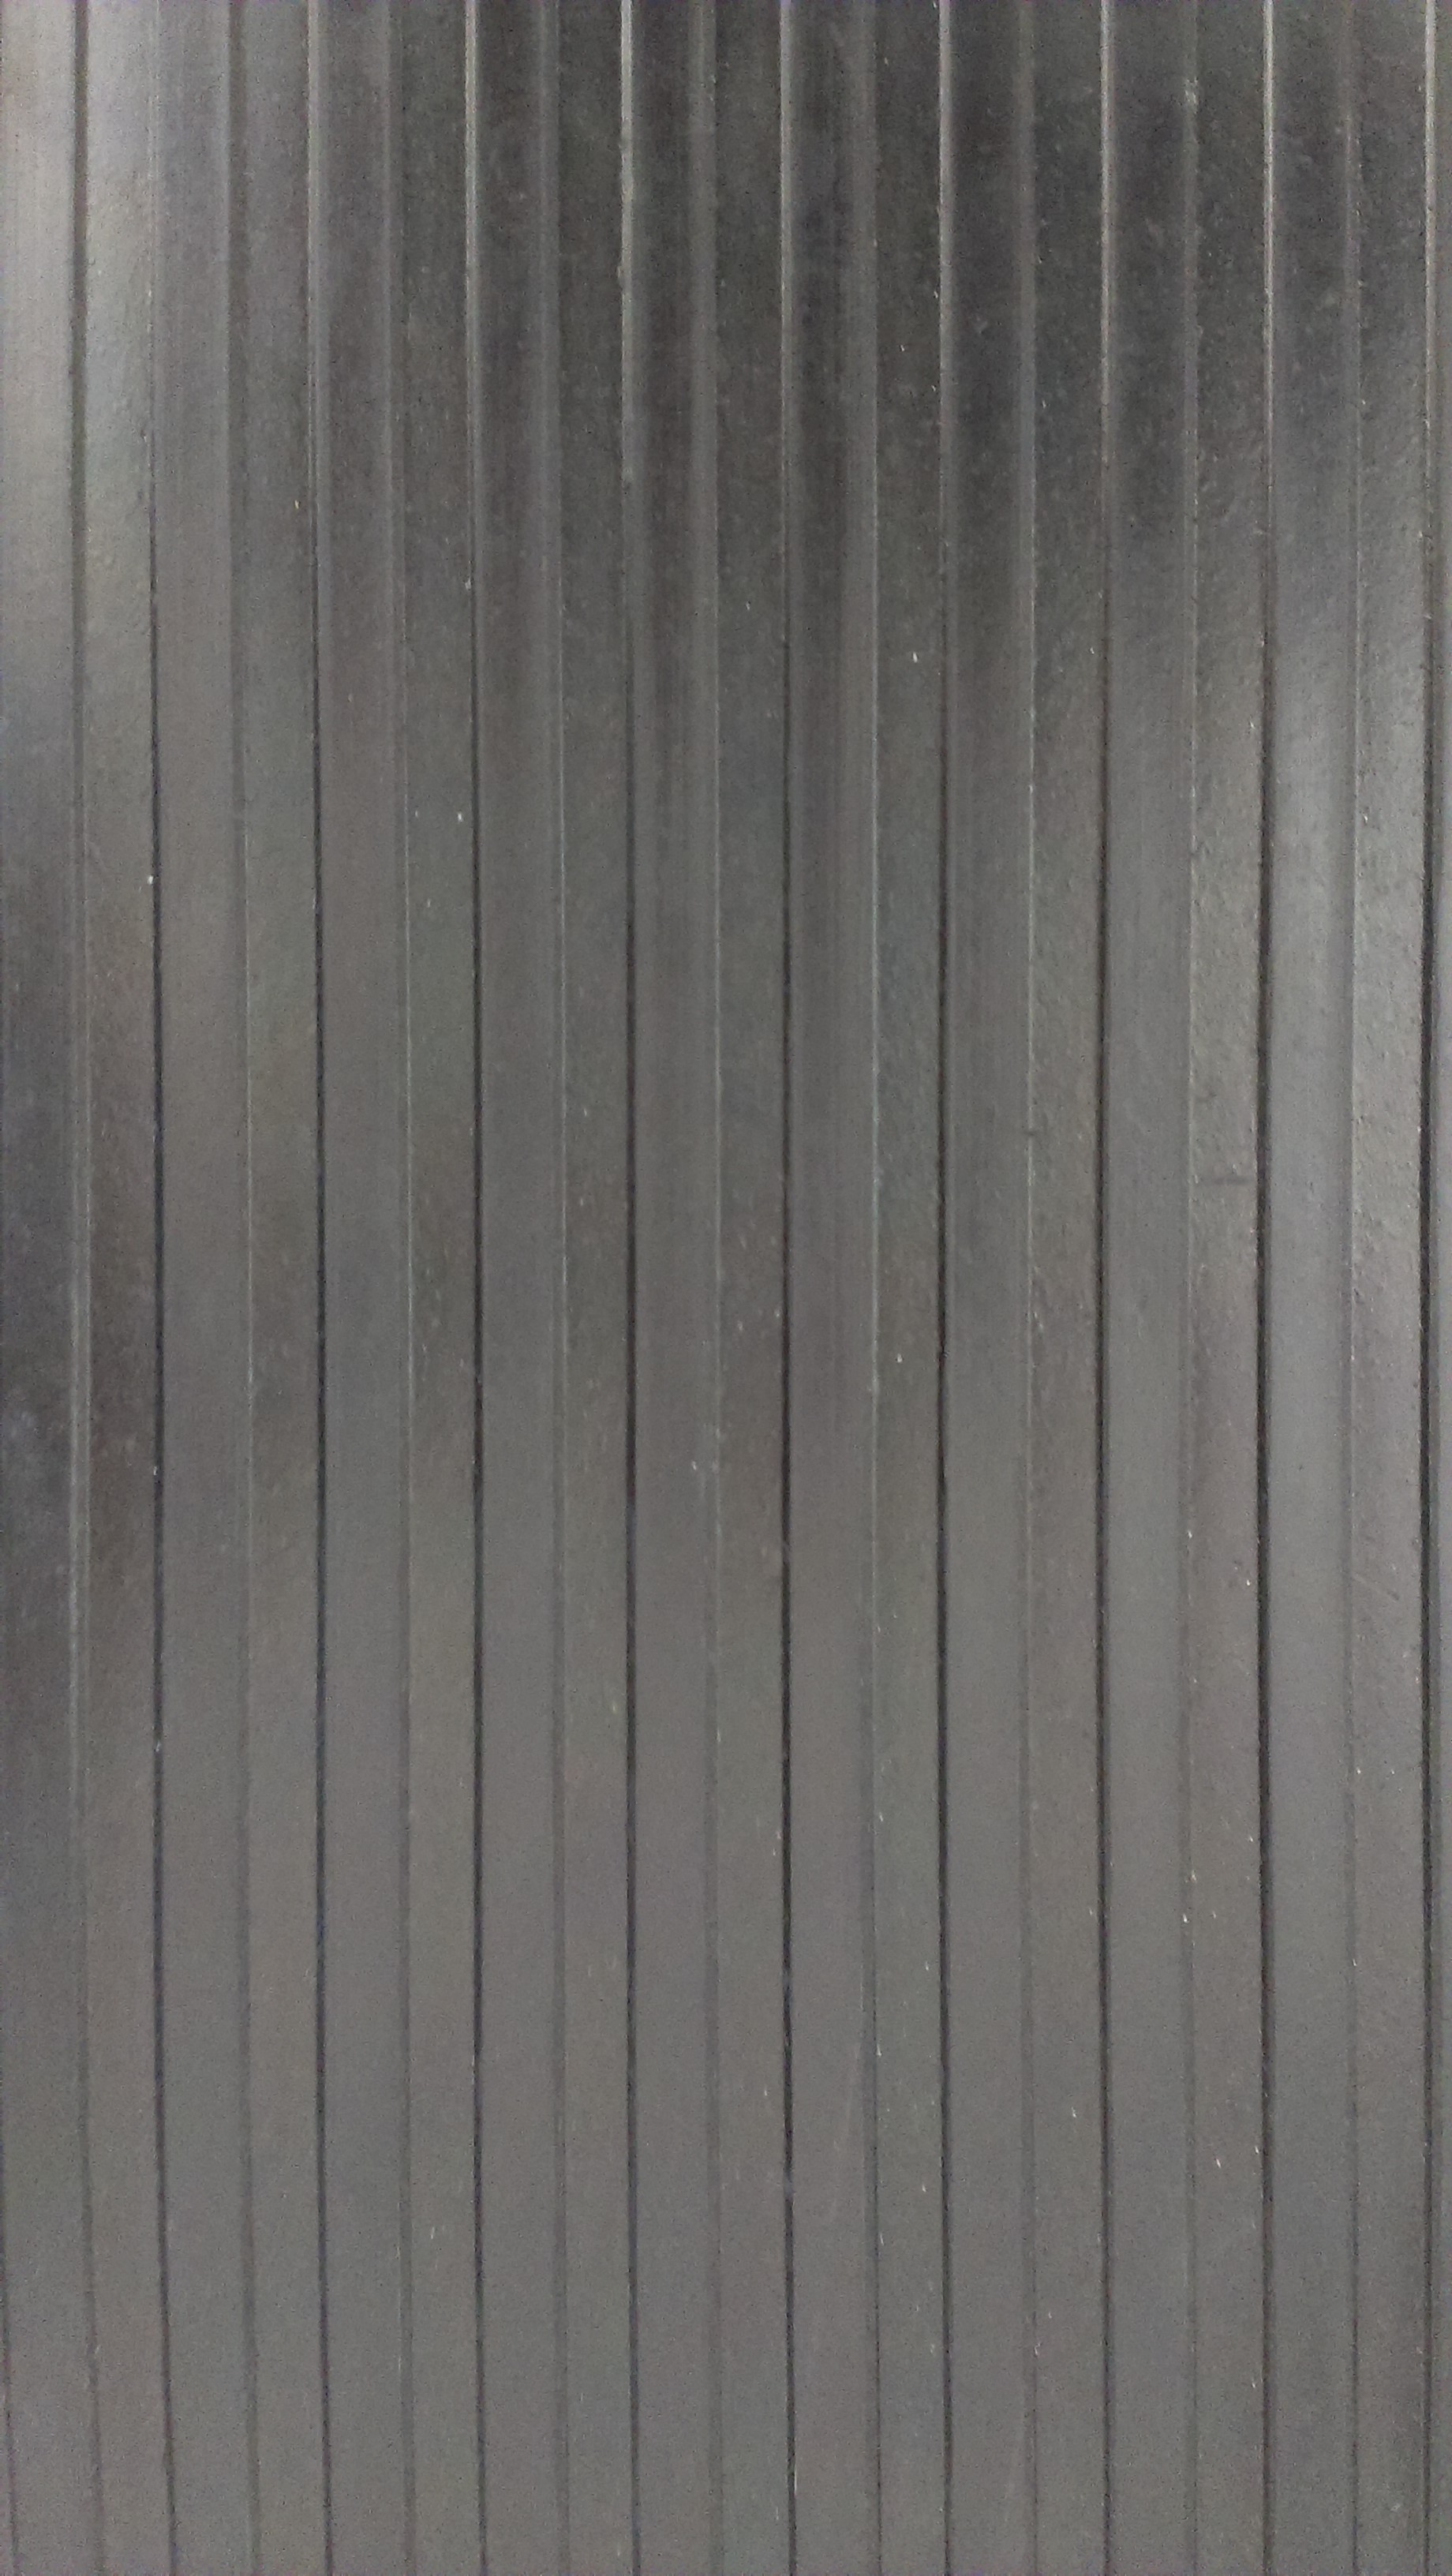 北京市耐磨防滑板 黑色条纹板 供应厂商厂家供应用于室内为铺设美的耐磨防滑板 黑色条纹板 供应厂商